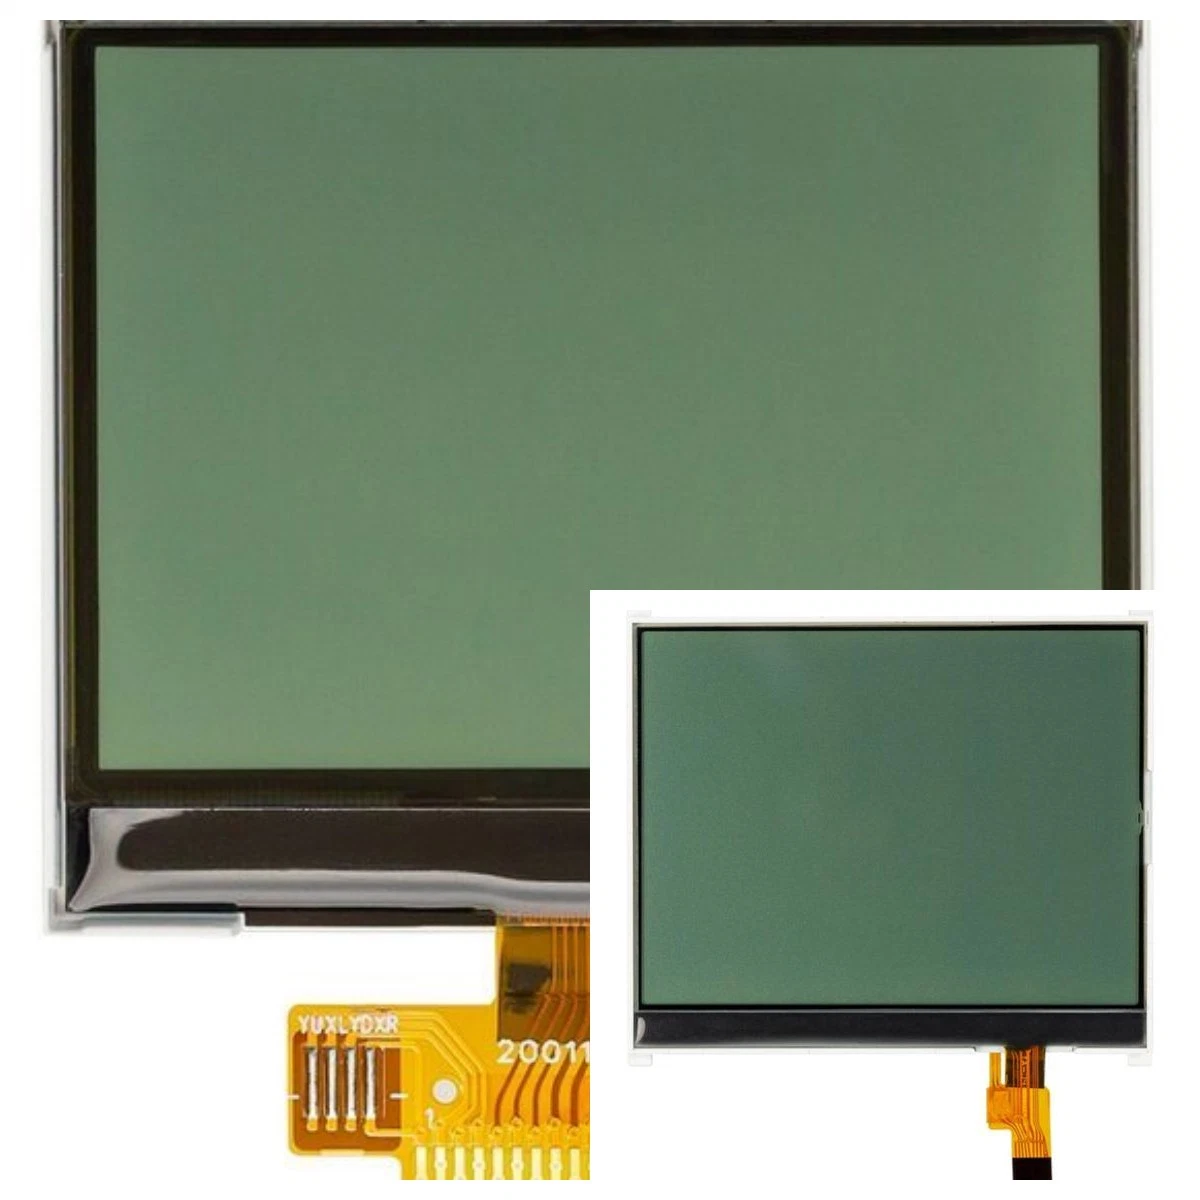 وحدة LCD الرسومية، شريحة 7 متوافقة مع RoHS OEM/ODM LCD أحادية اللون وحدة LCD